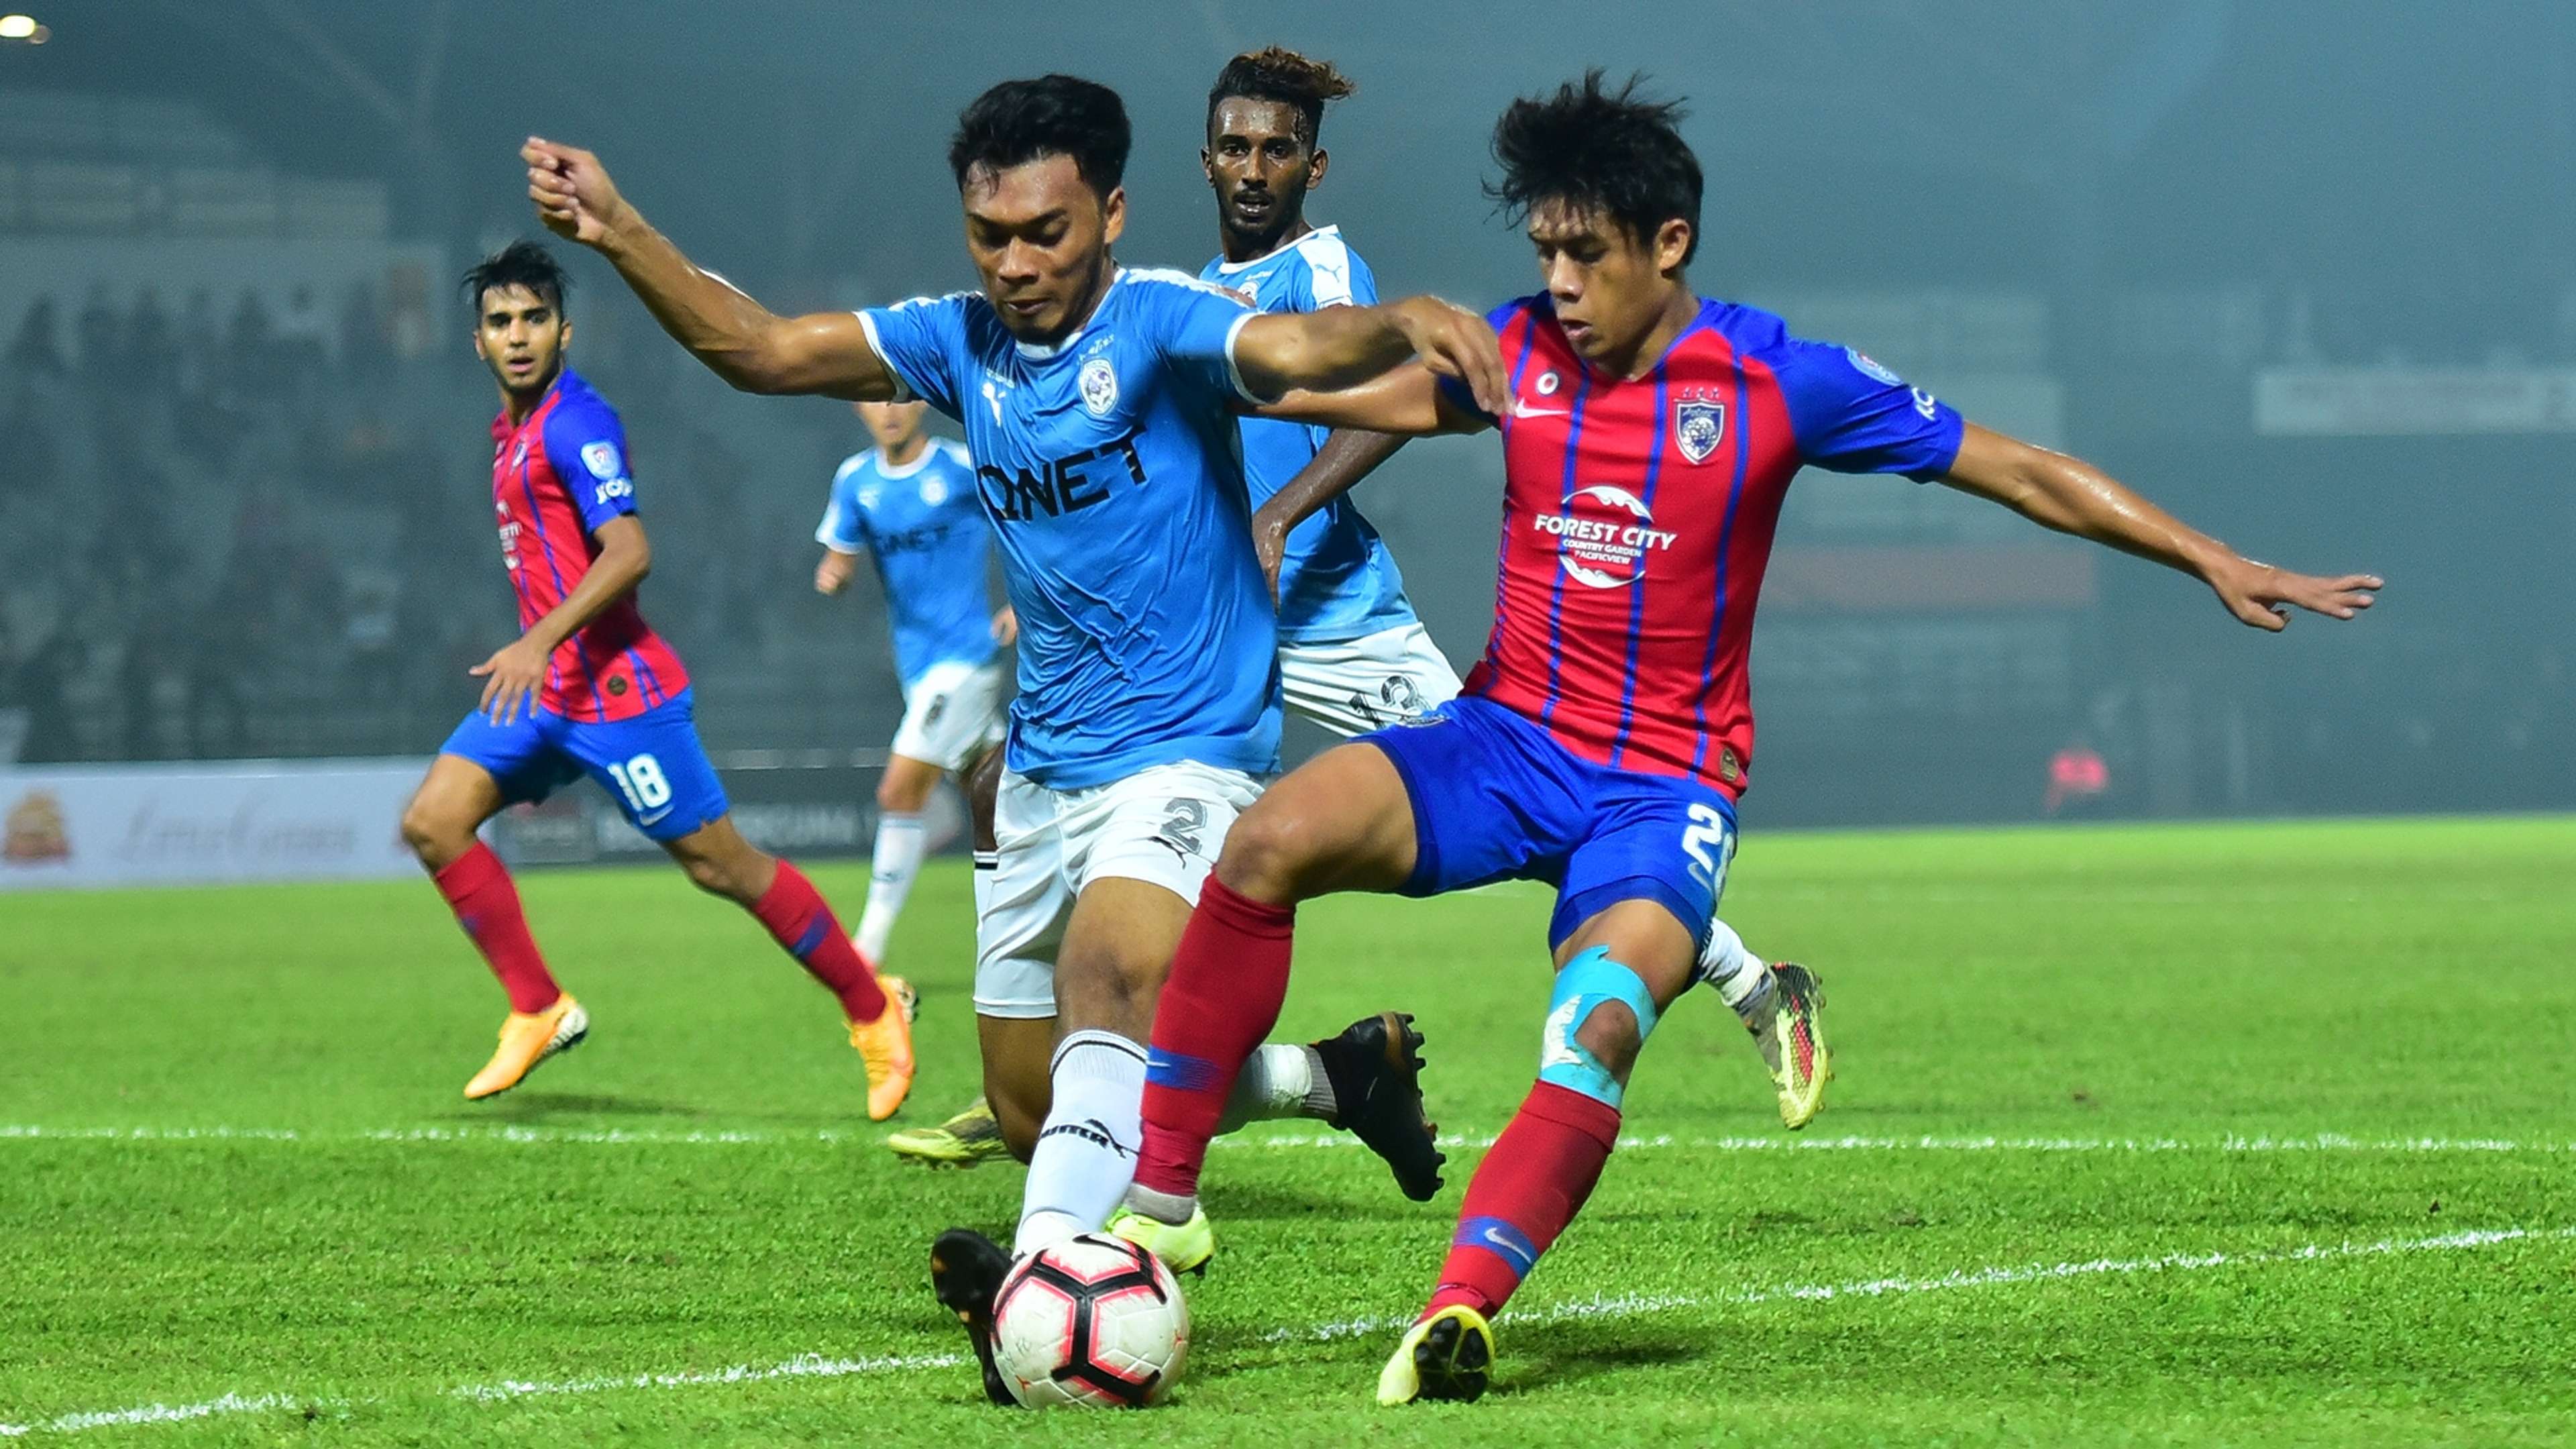 Annas Rahmat, Syafiq Ahmad, Petaling Jaya City FC v Johor Darul Ta'zim, Malaysia Cup, 13 Sep 2019